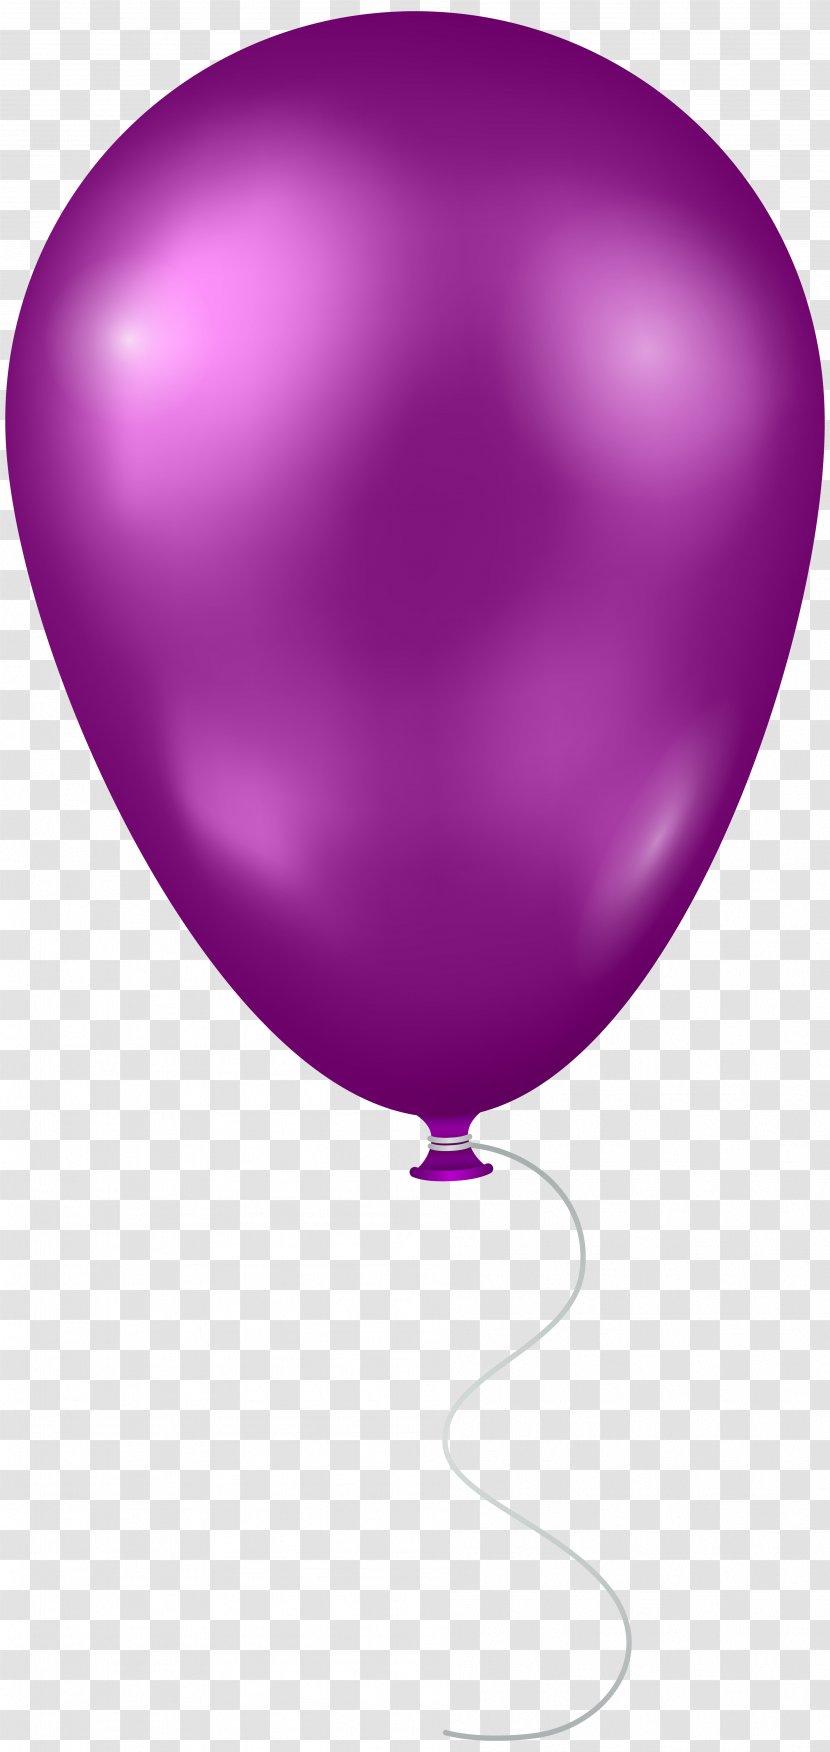 Balloon Heart - Purple Transparent Clip Art Image Transparent PNG